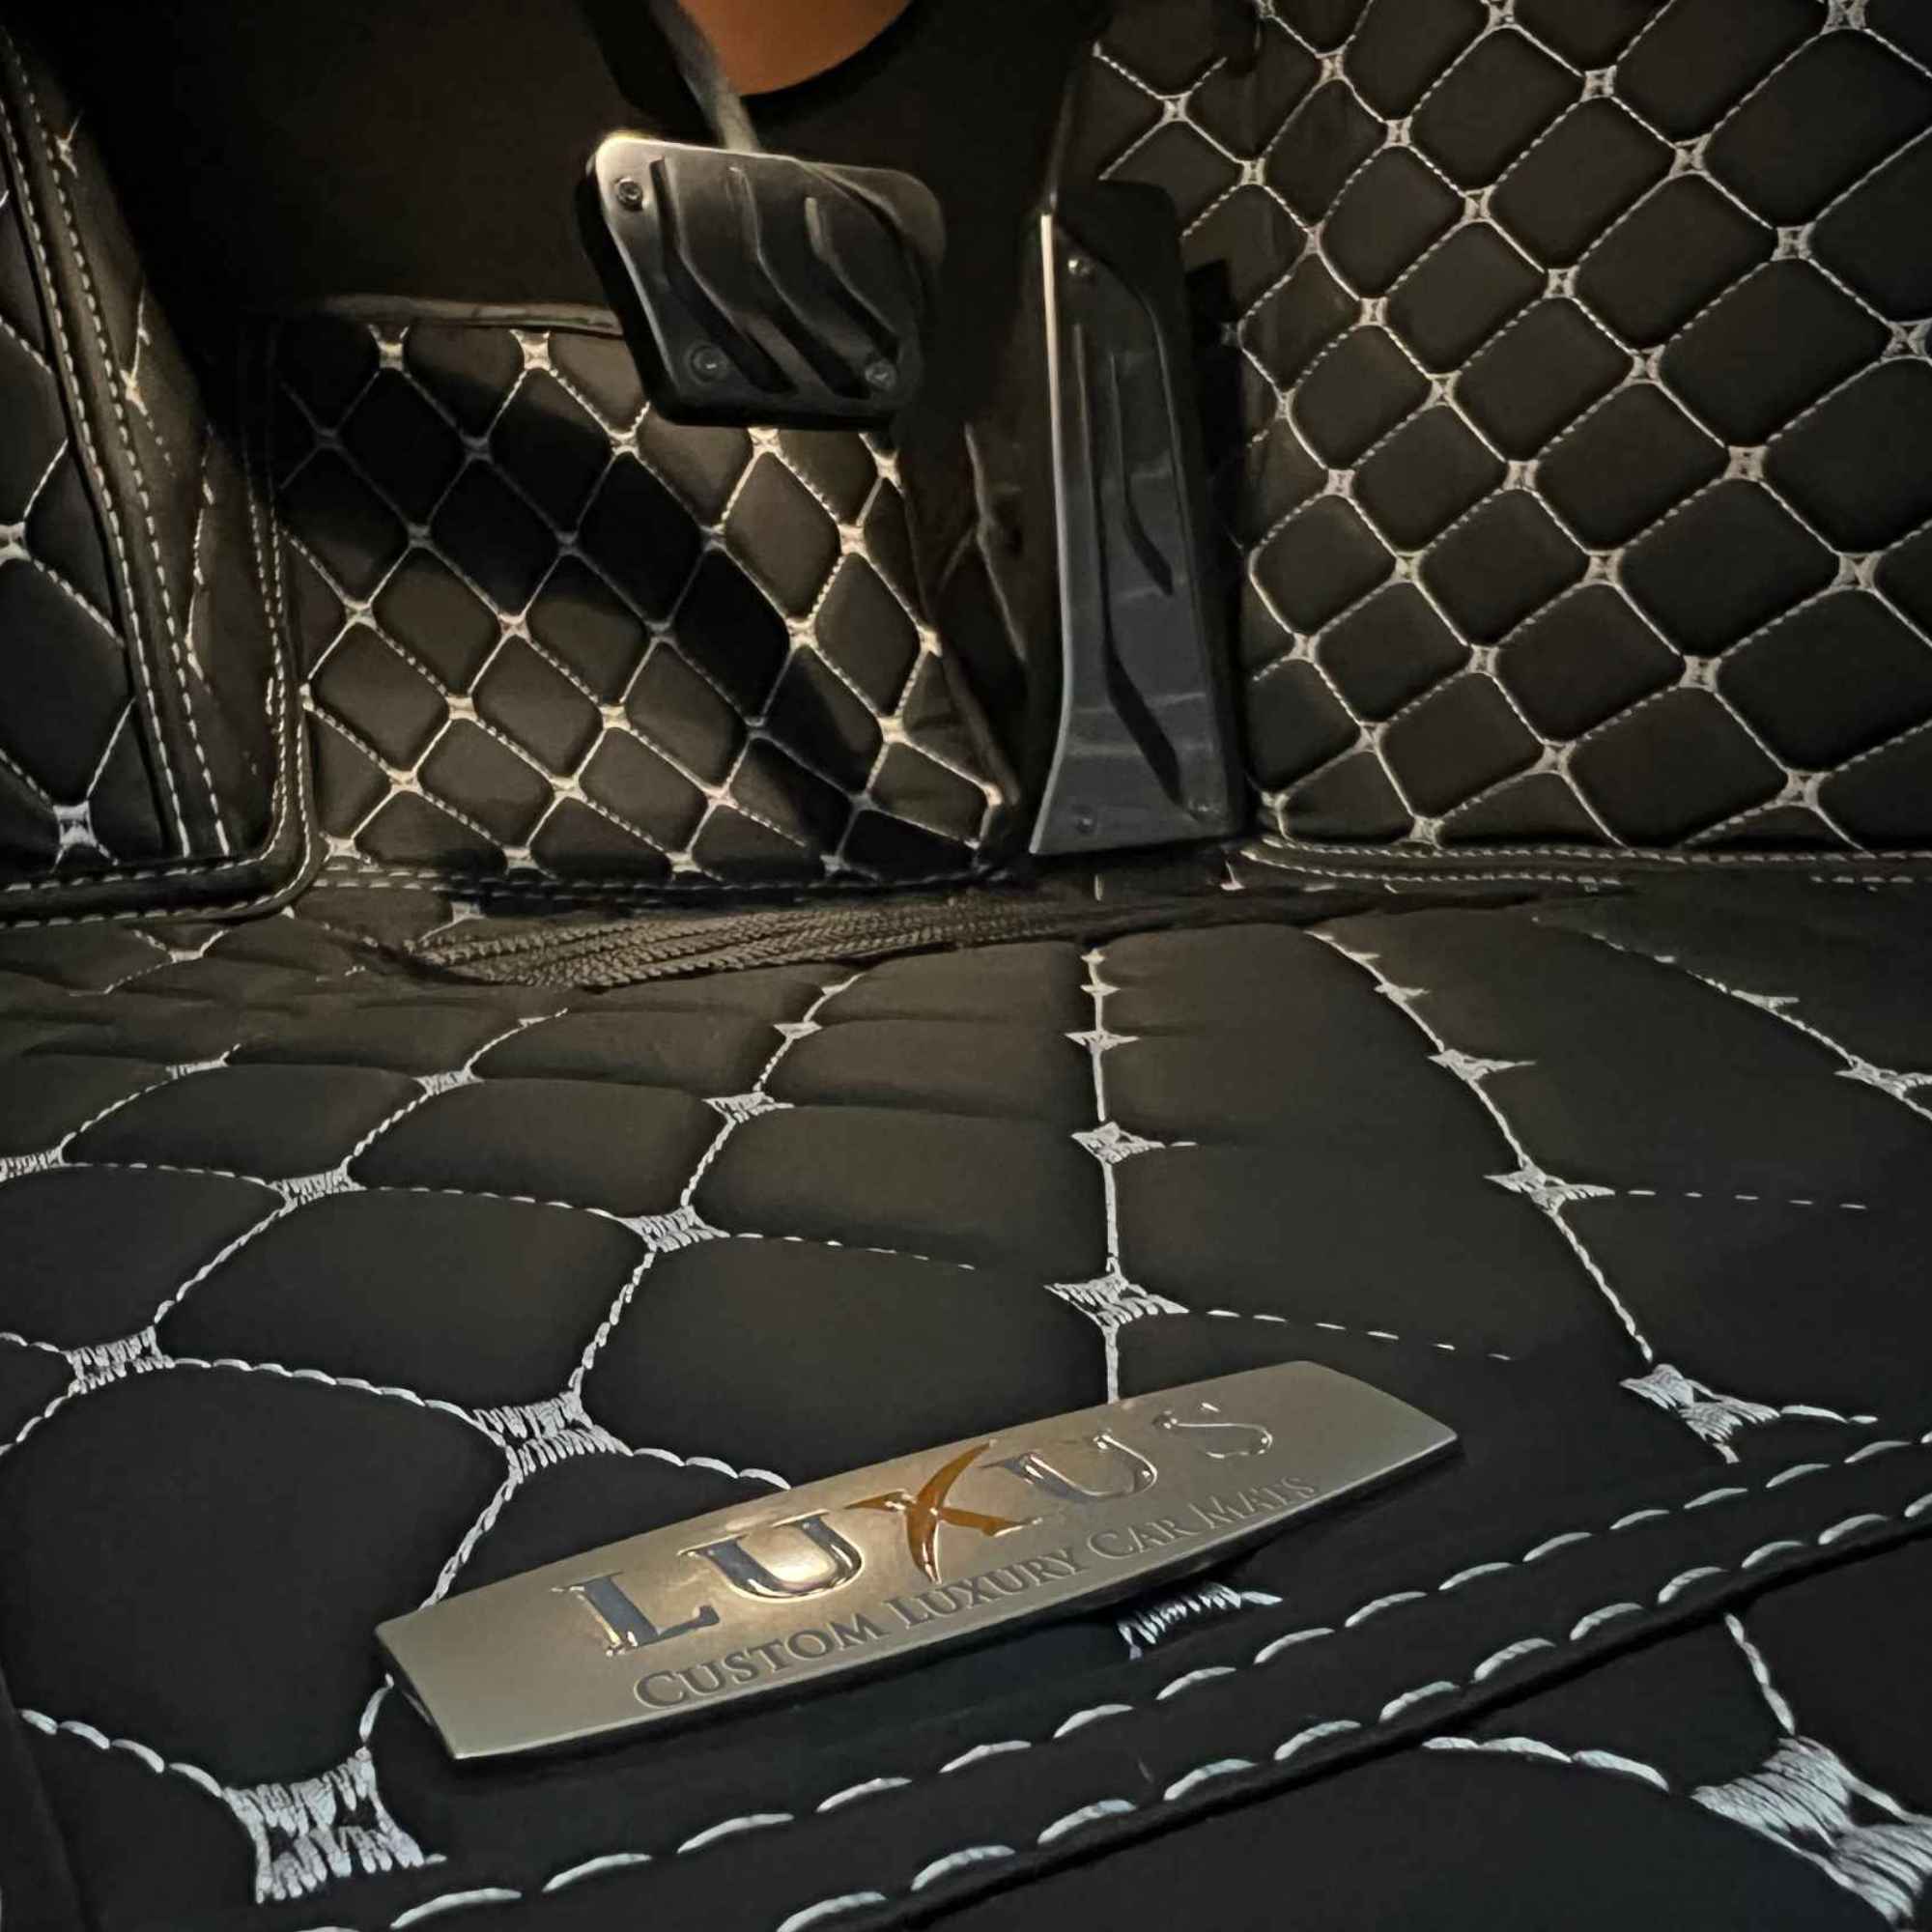 Luxus Car Mats™ - Juego de alfombrillas de lujo con costuras en negro y naranja